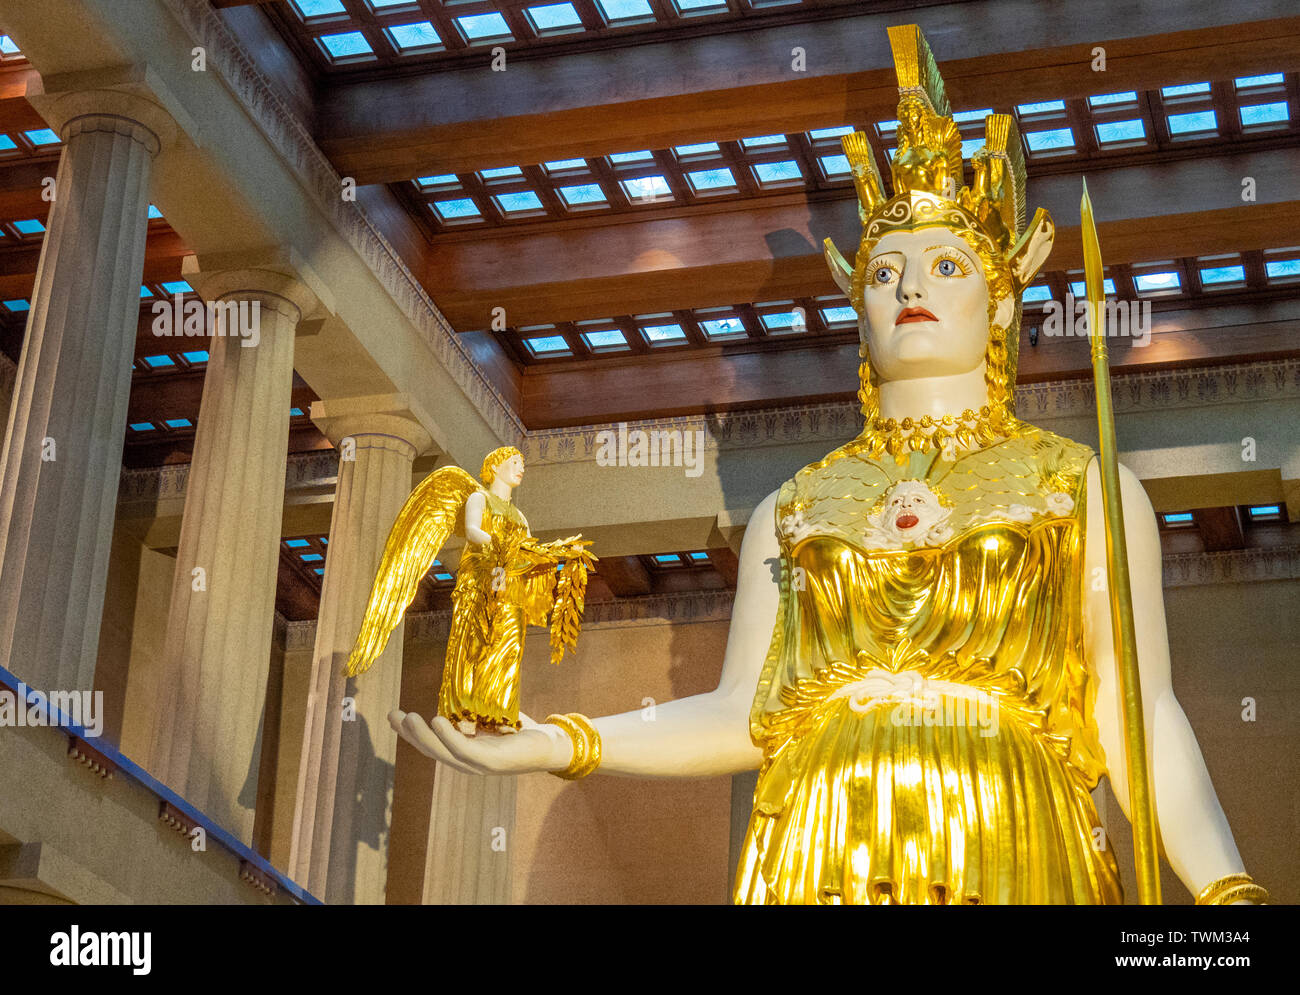 Scala piena di repliche di Athena Parthenos statua che tiene la statua della dea Nike all'interno del Partenone in Centennial Park Nashville Tennessee negli Stati Uniti. Foto Stock